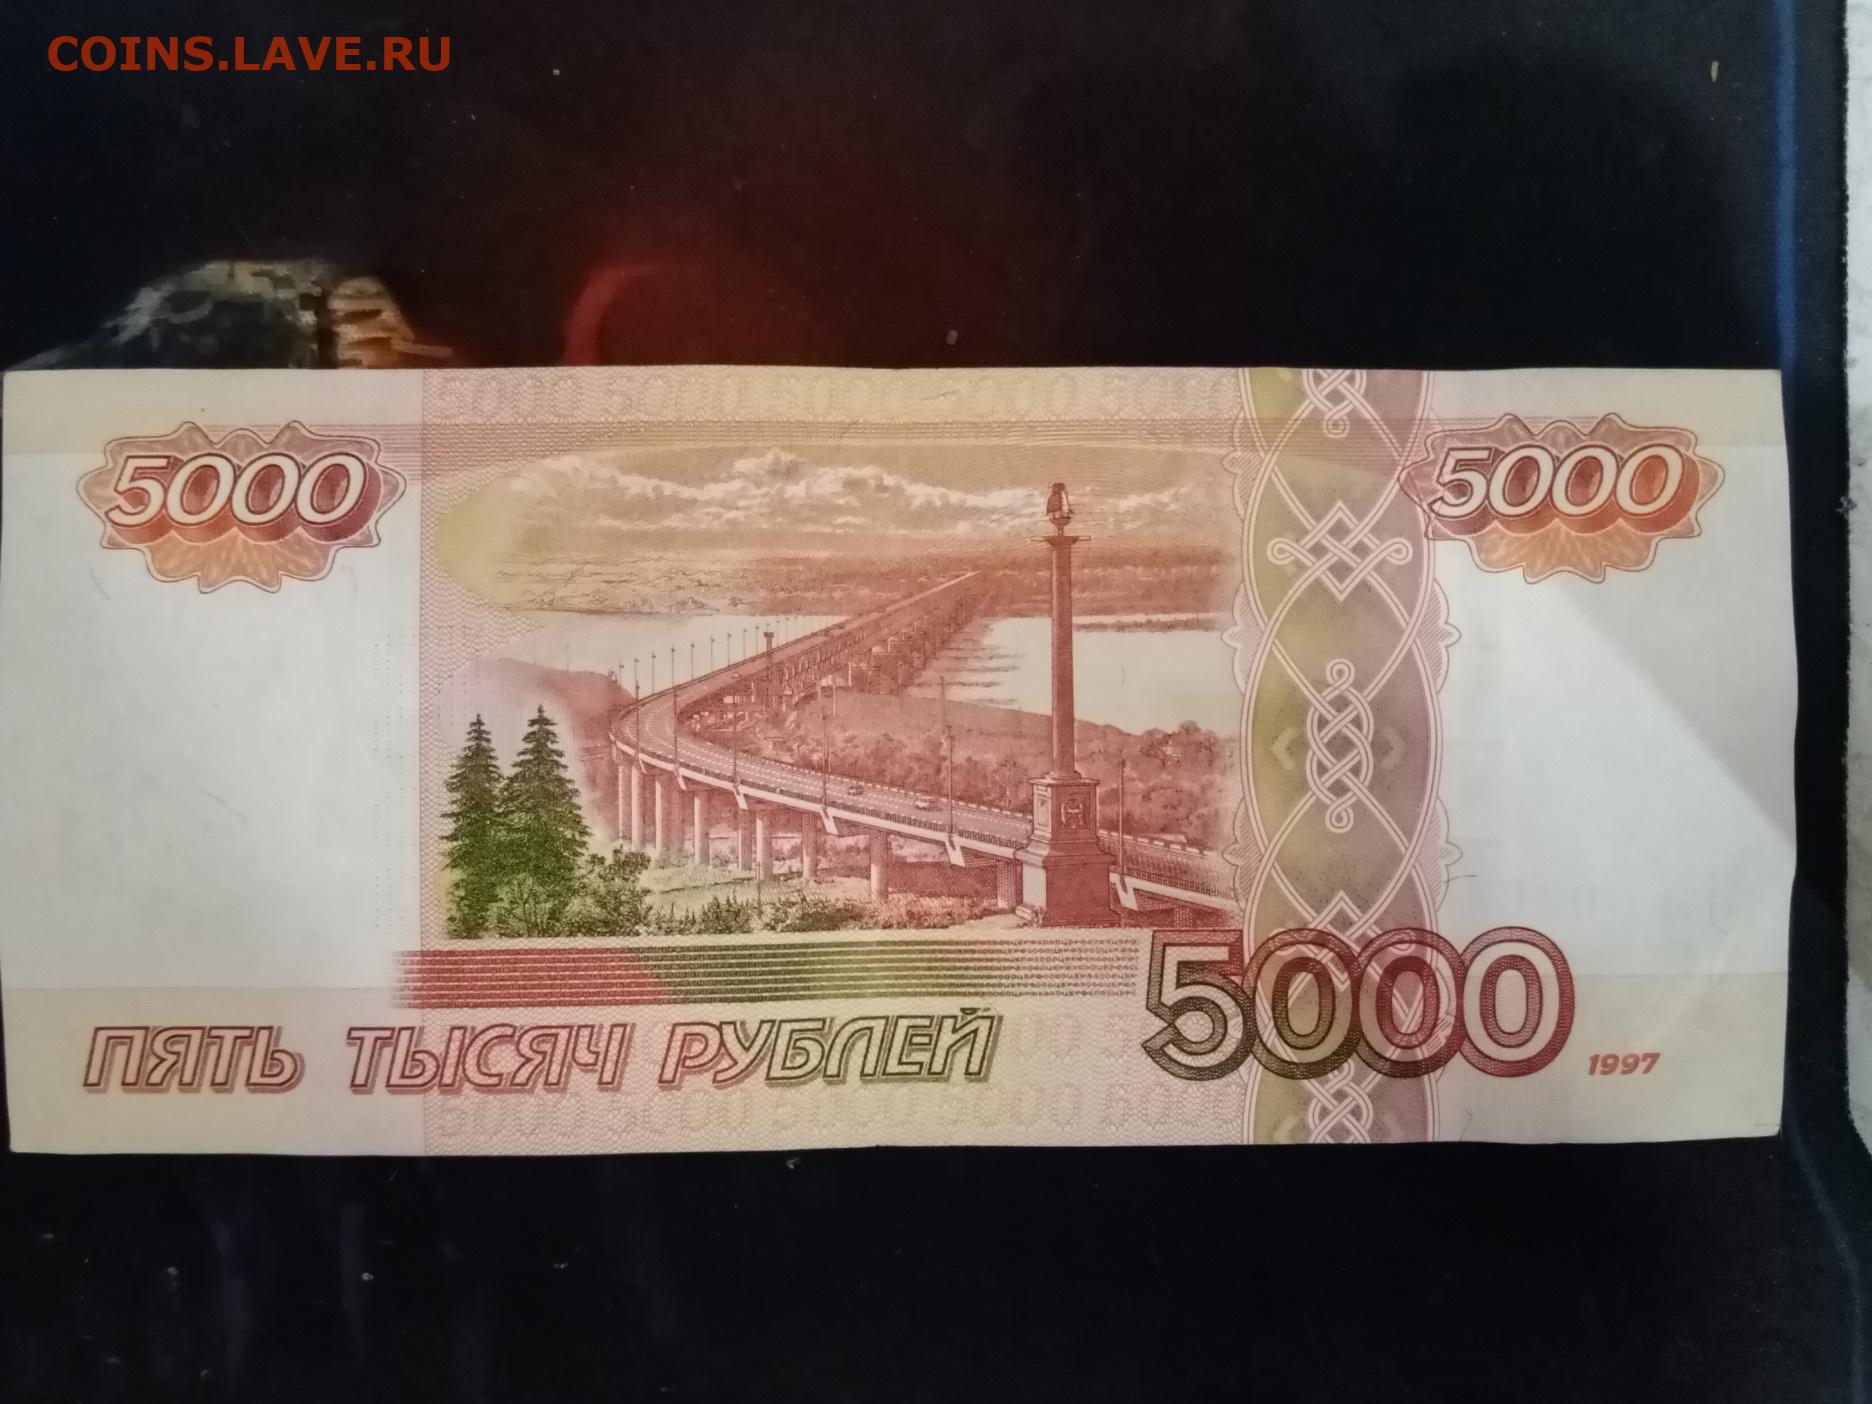 Стороны купюры. Купюра 5000 1997 года. Купюра 5000 рублей 1997 года. 5000 Рублей 2006 года модификации. Оборотная сторона 5000 купюры.